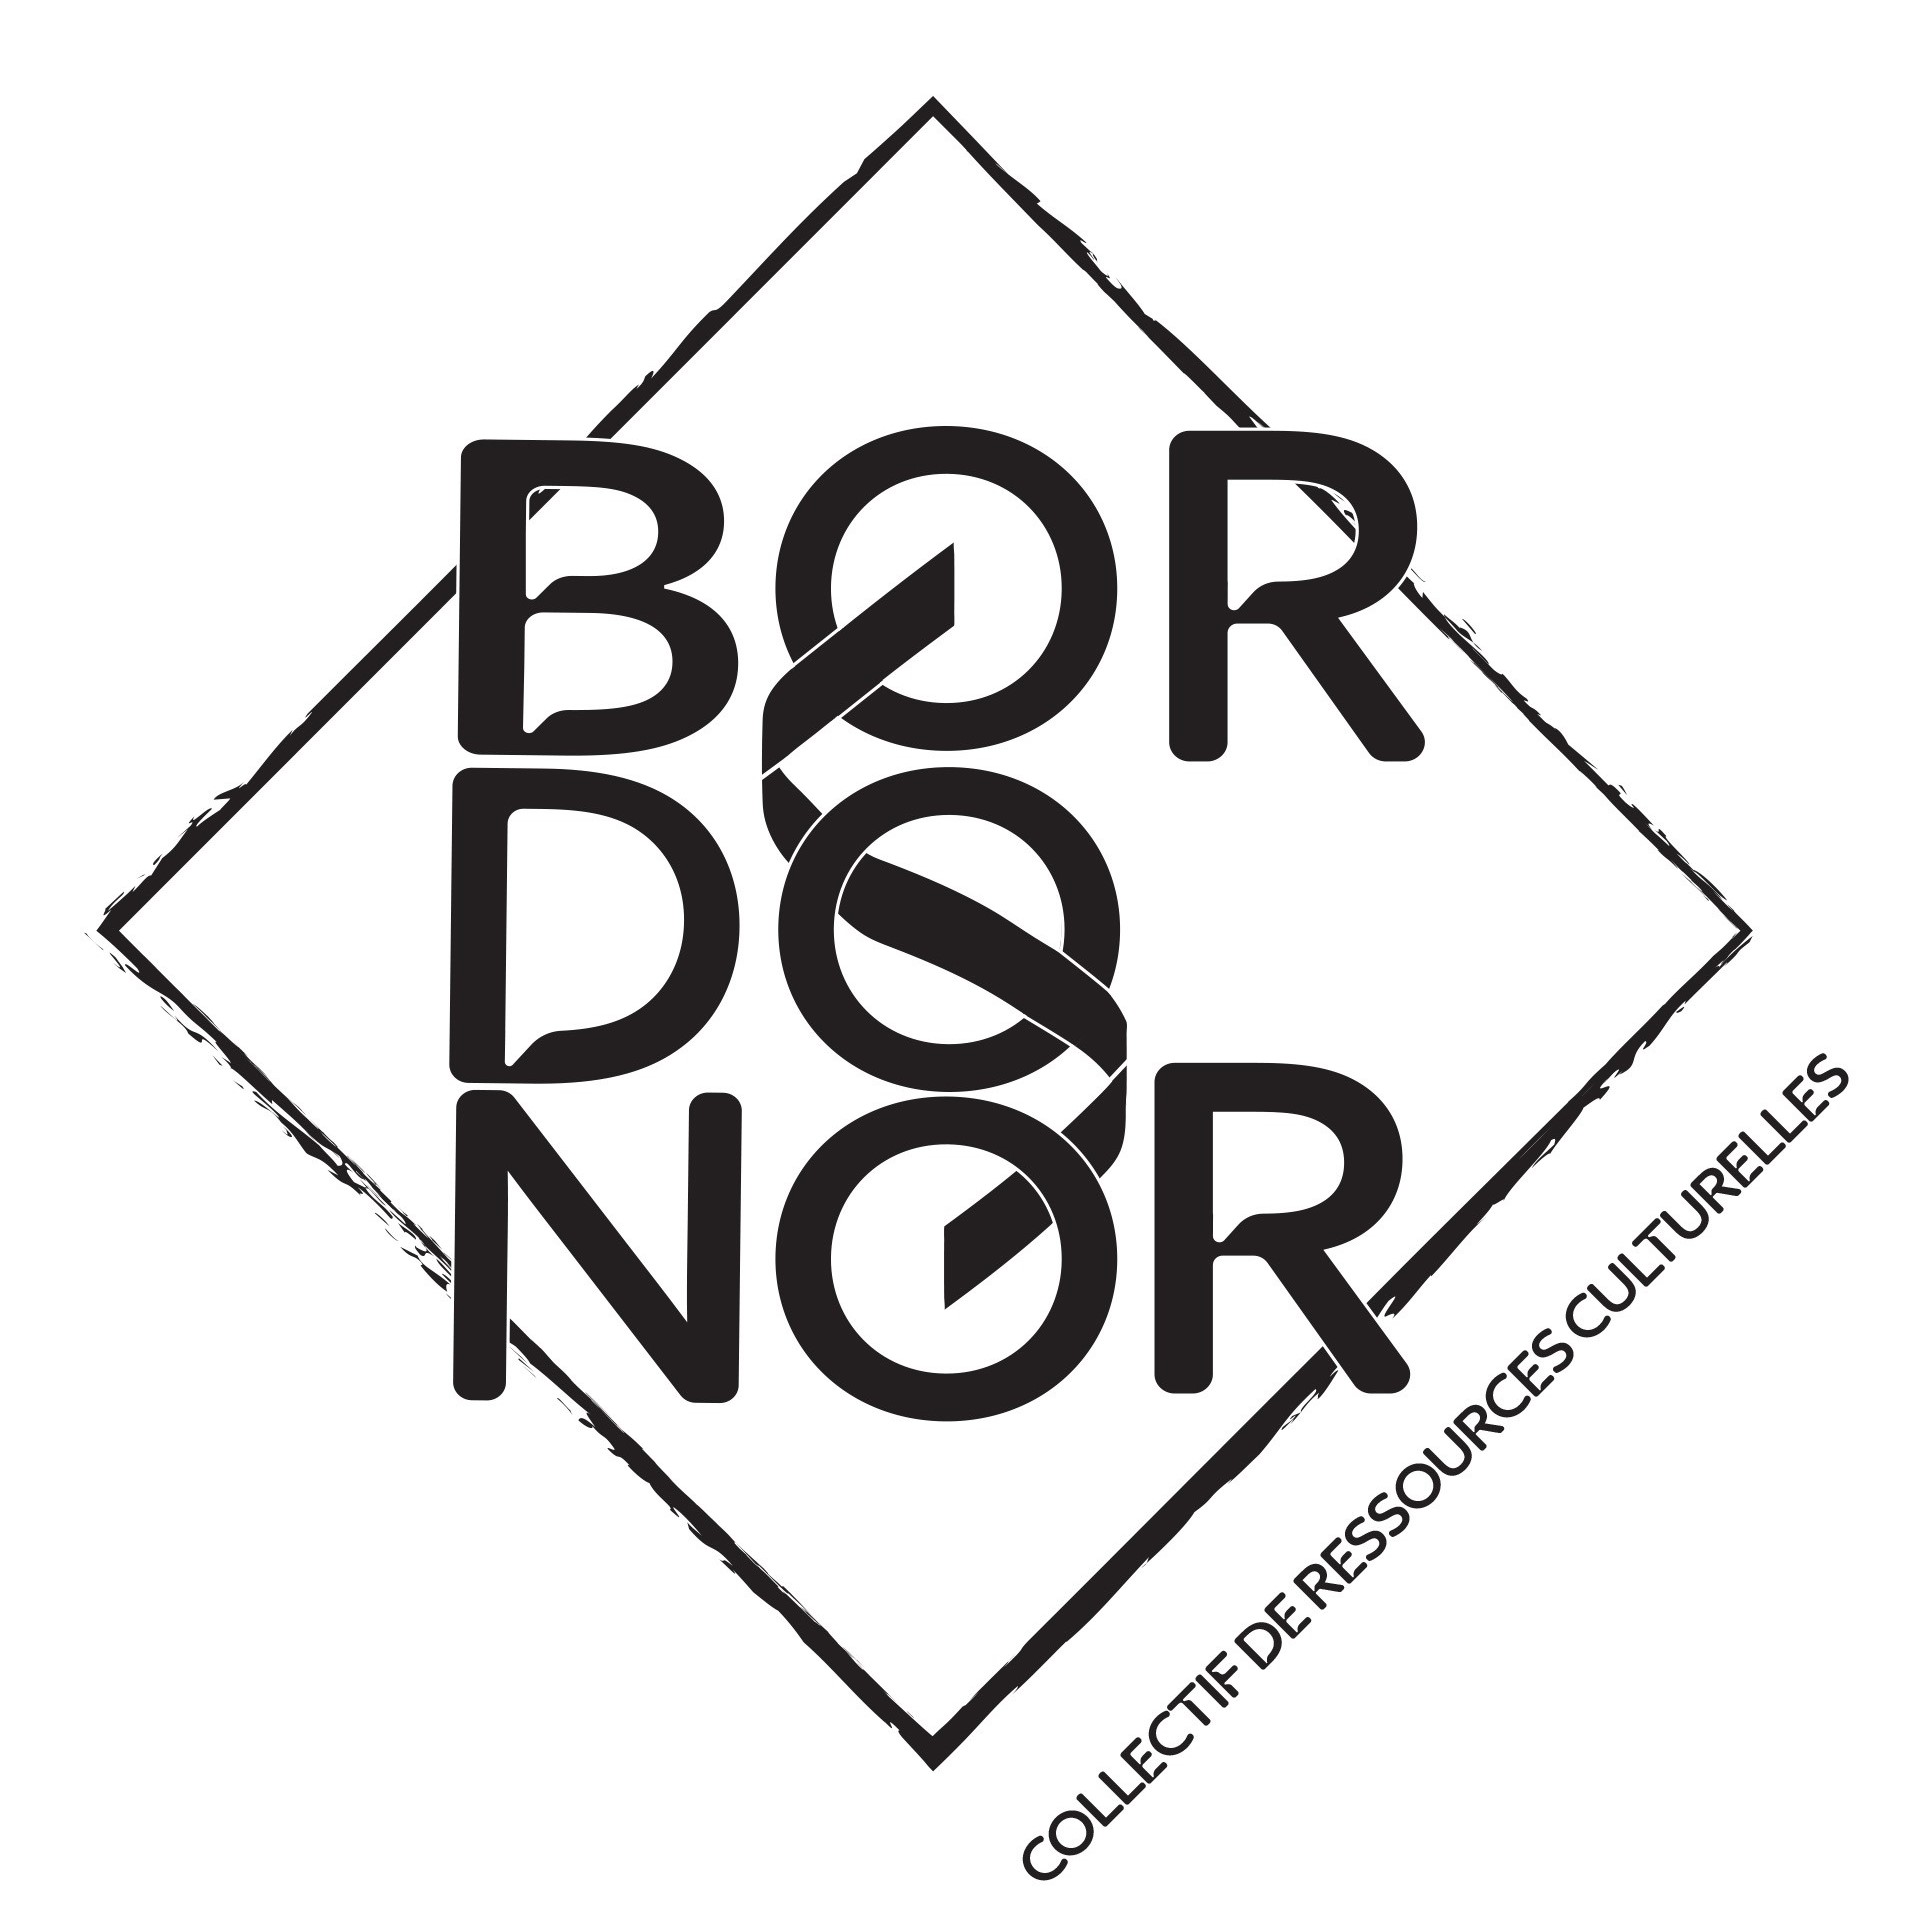 logo collectif bordonor